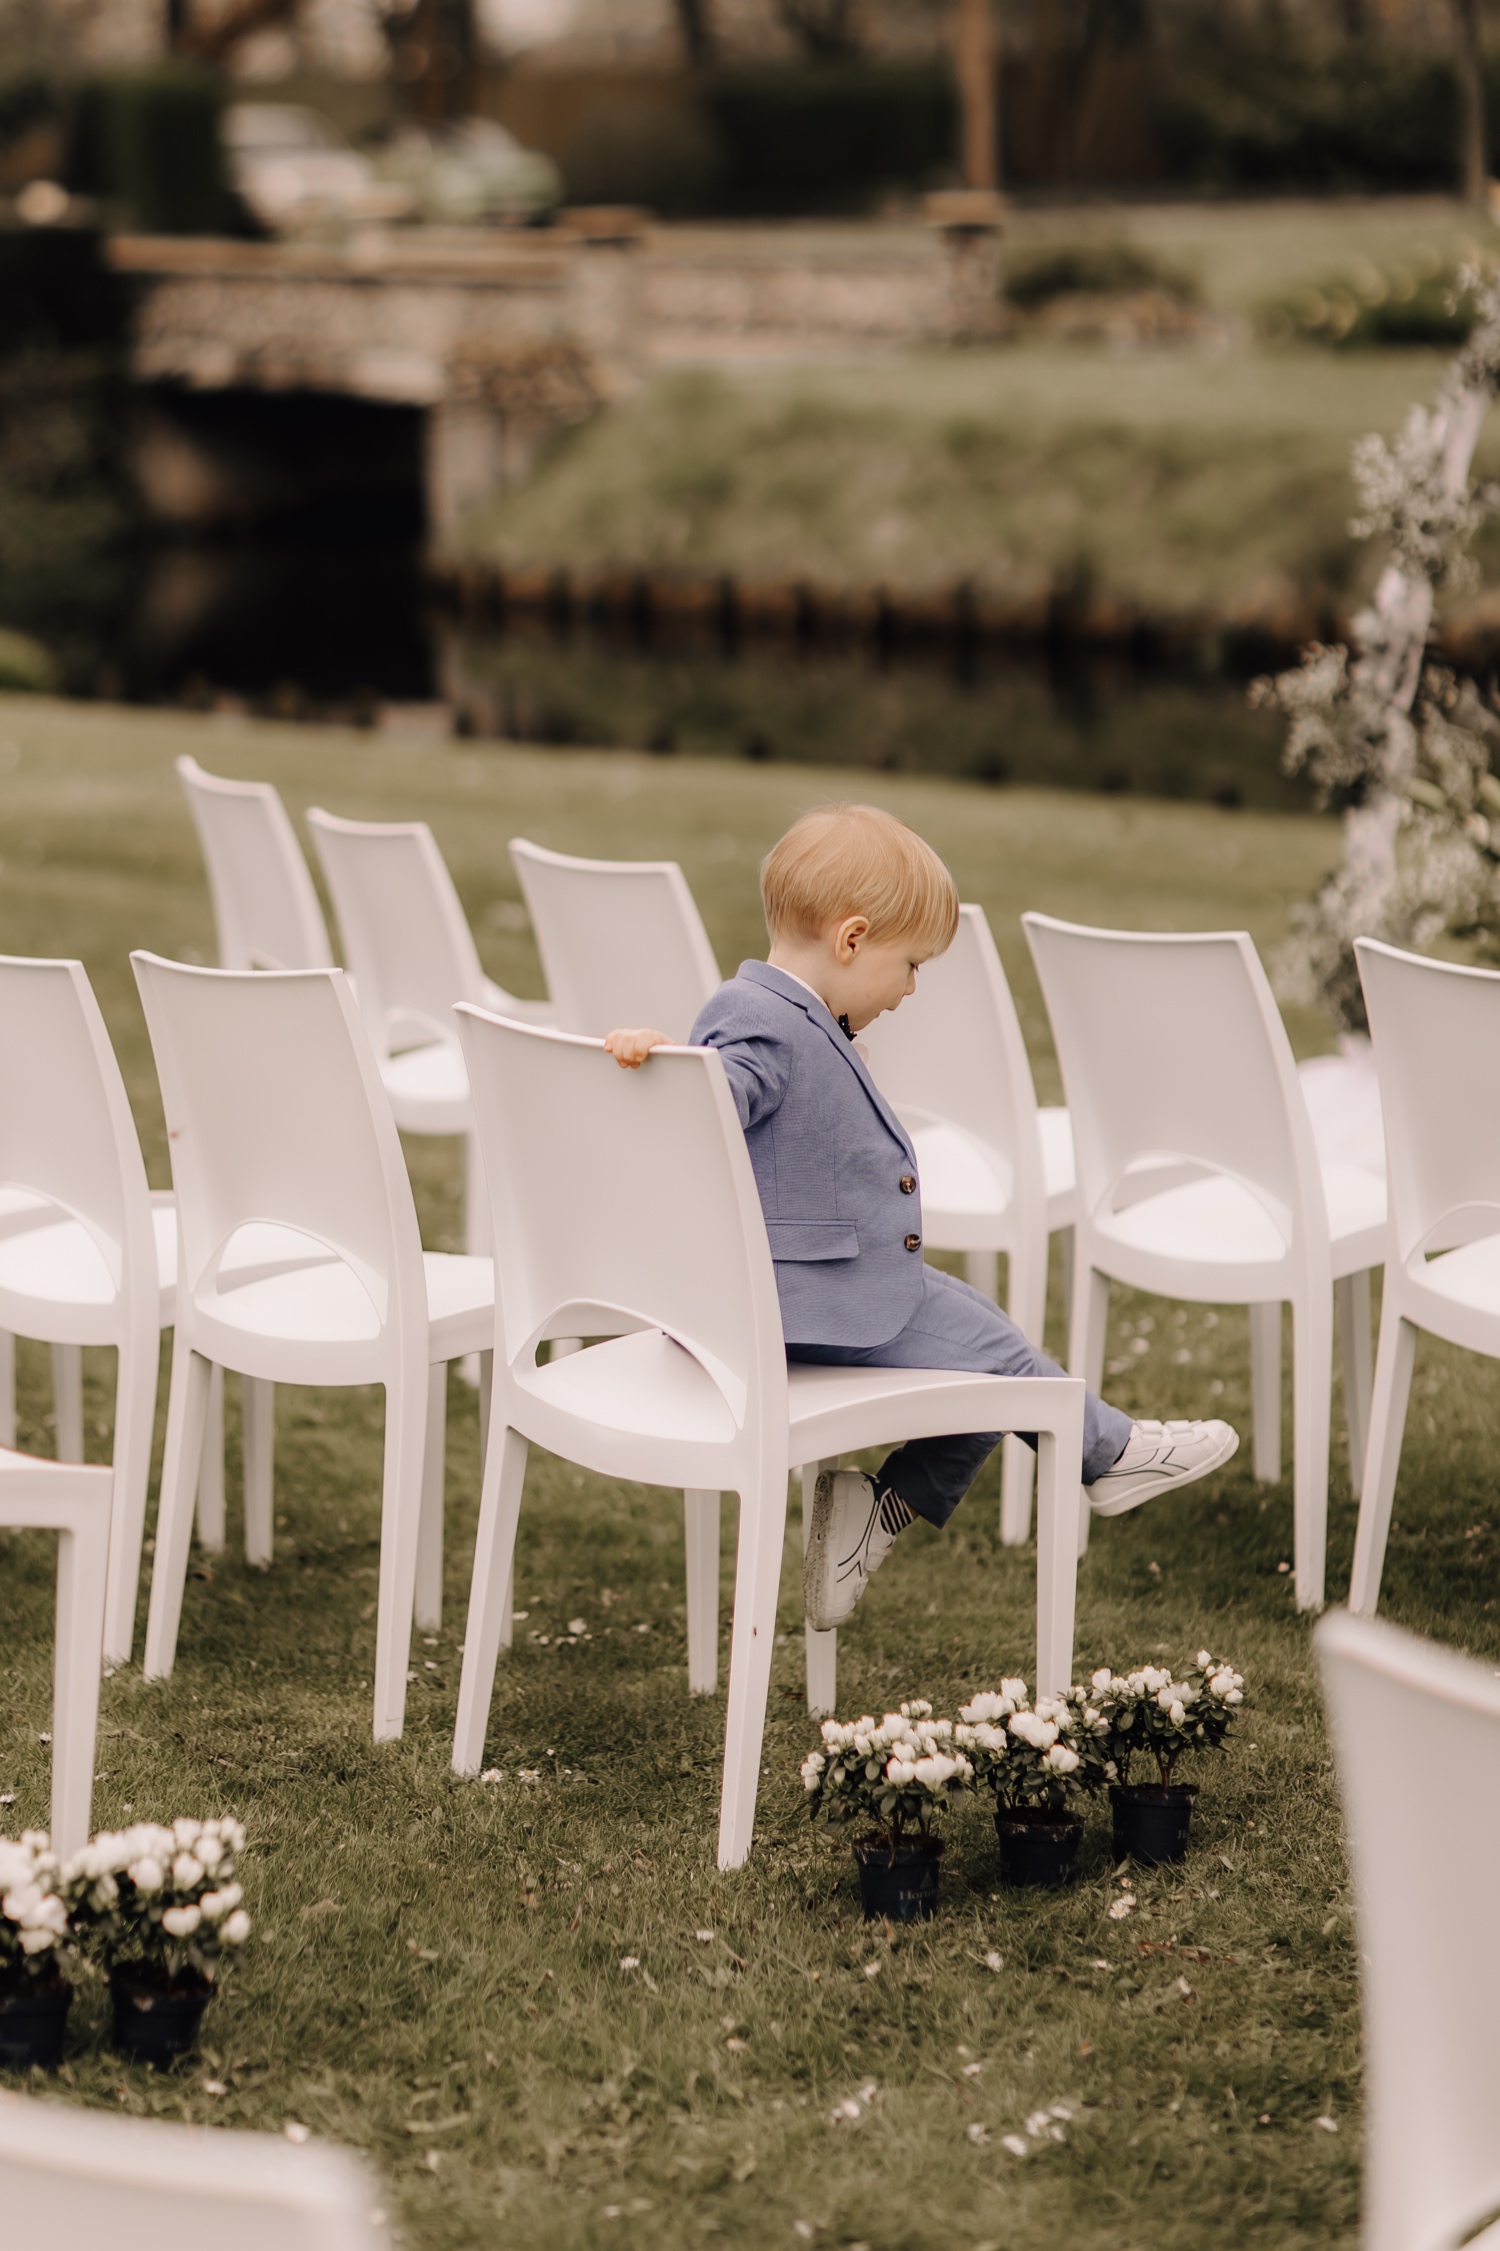 Huwelijksfotograaf Limburg - bruidsjongen speelt op een stoel